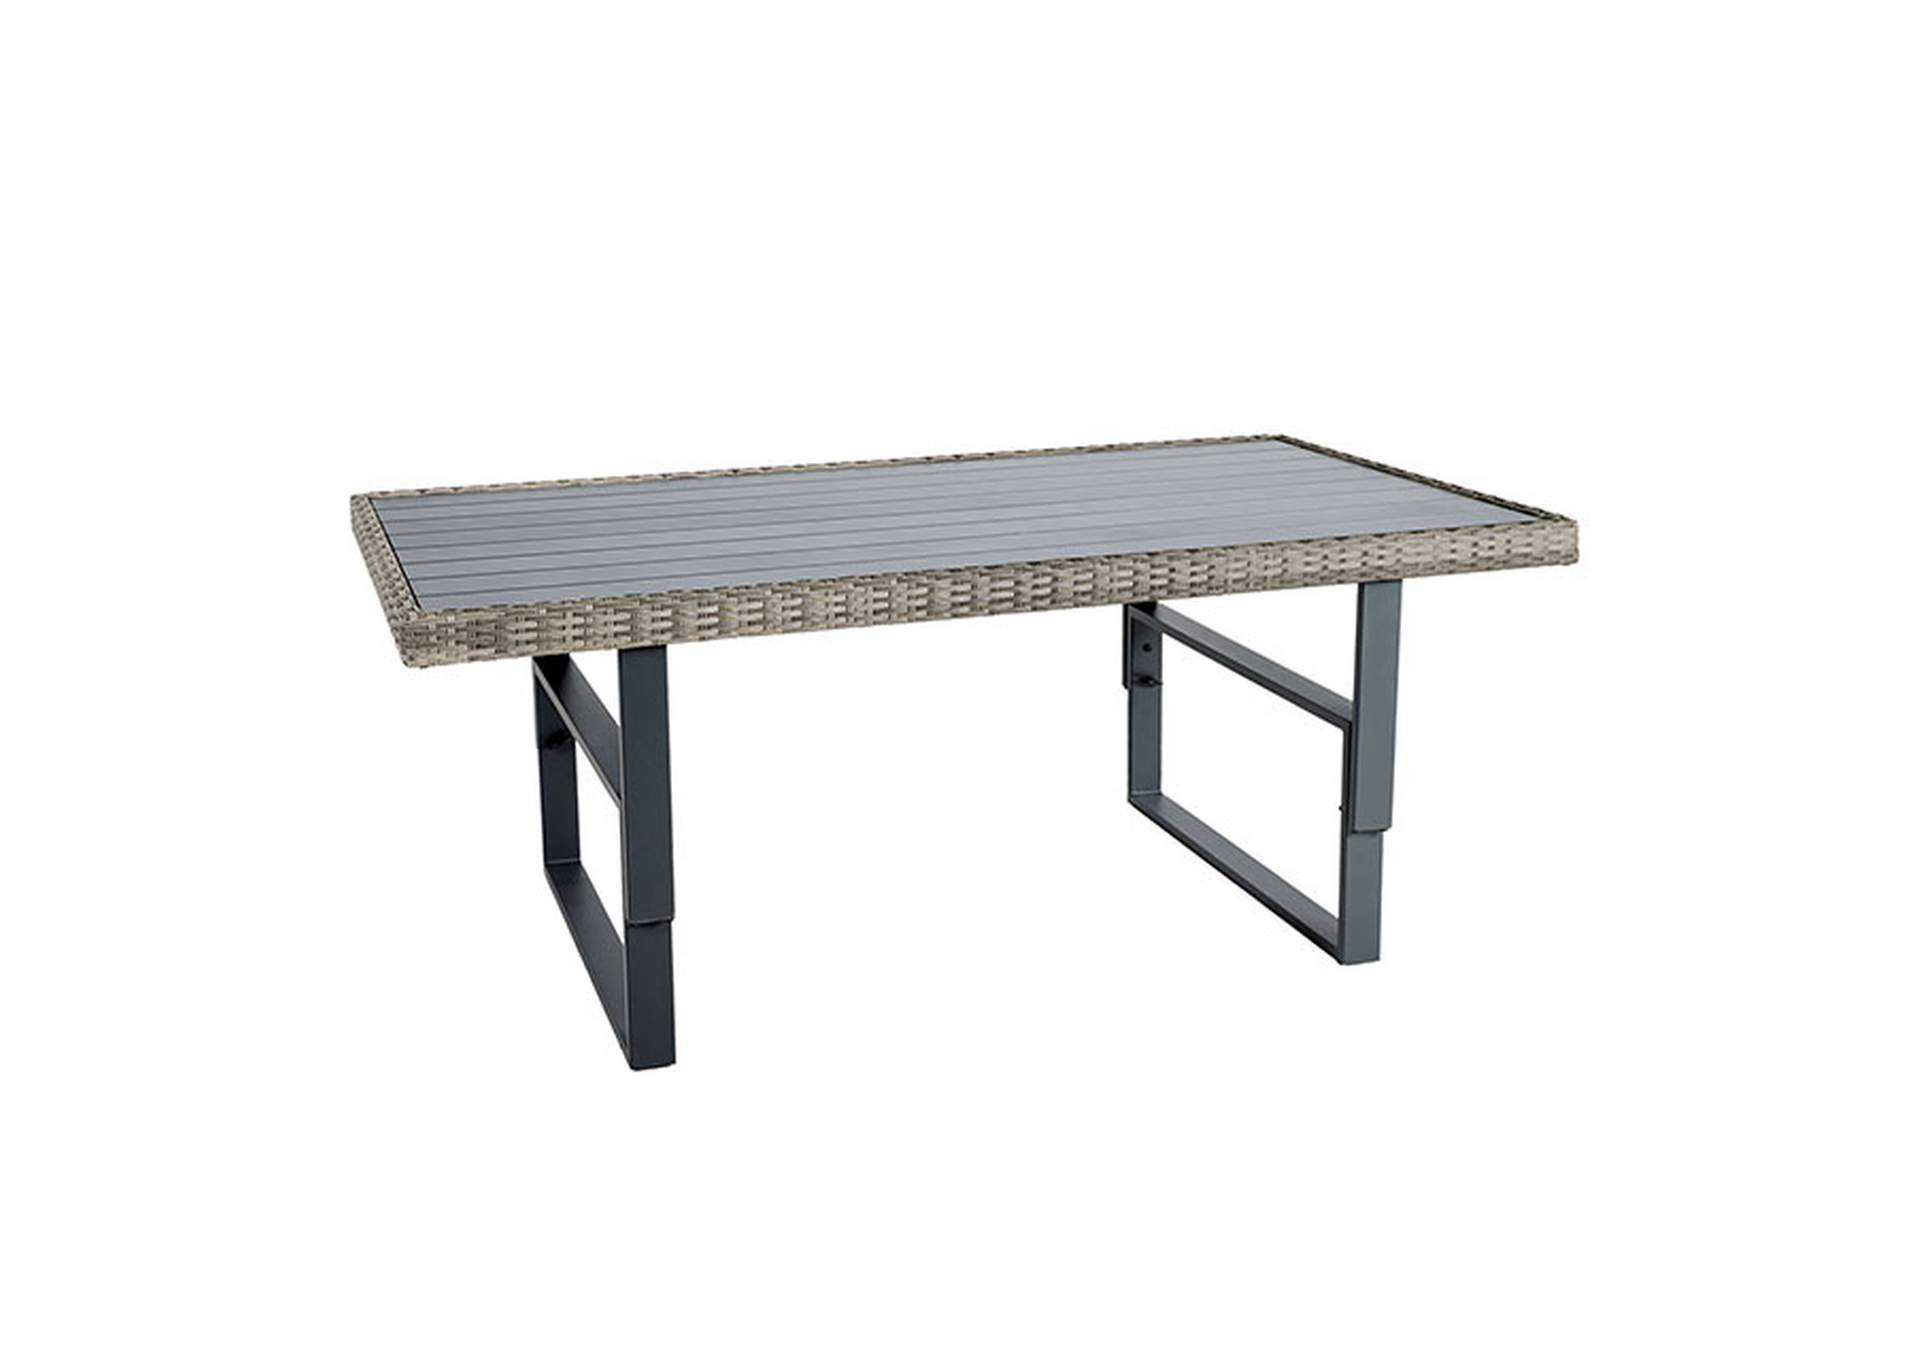 Antigua Height-Adjustable Table,Furniture of America